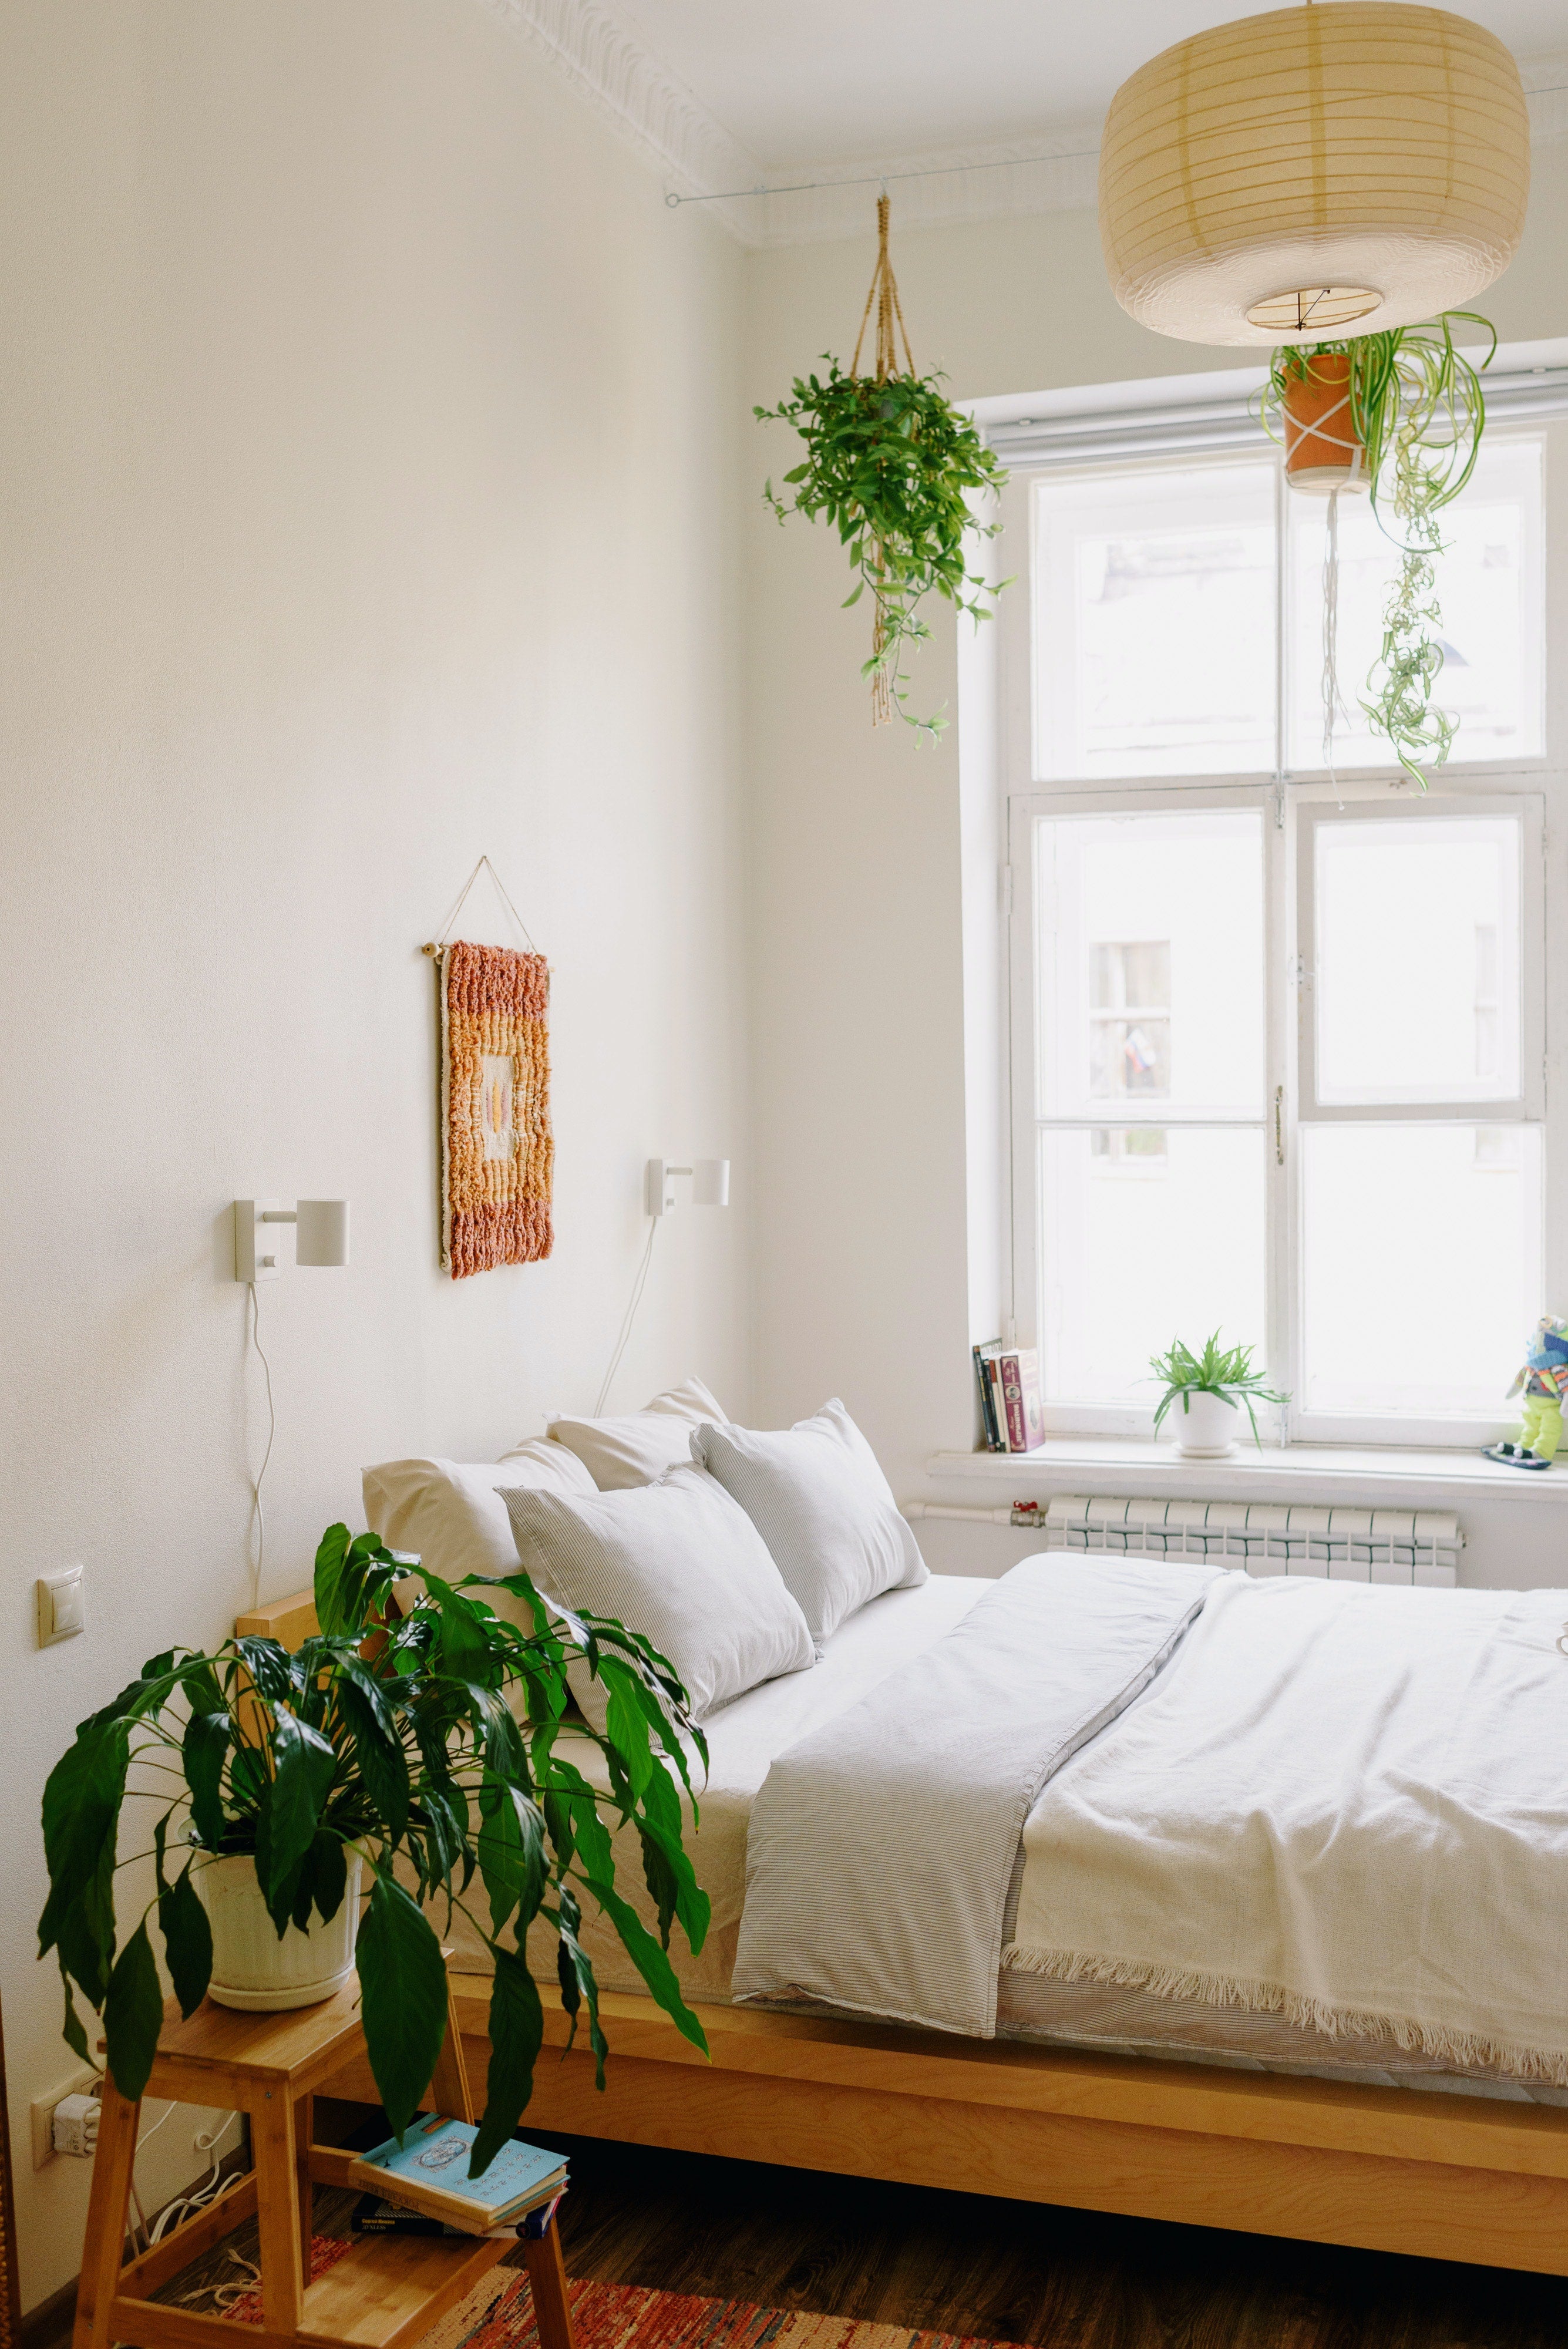 Décorer sa chambre avec des plantes - Le guide